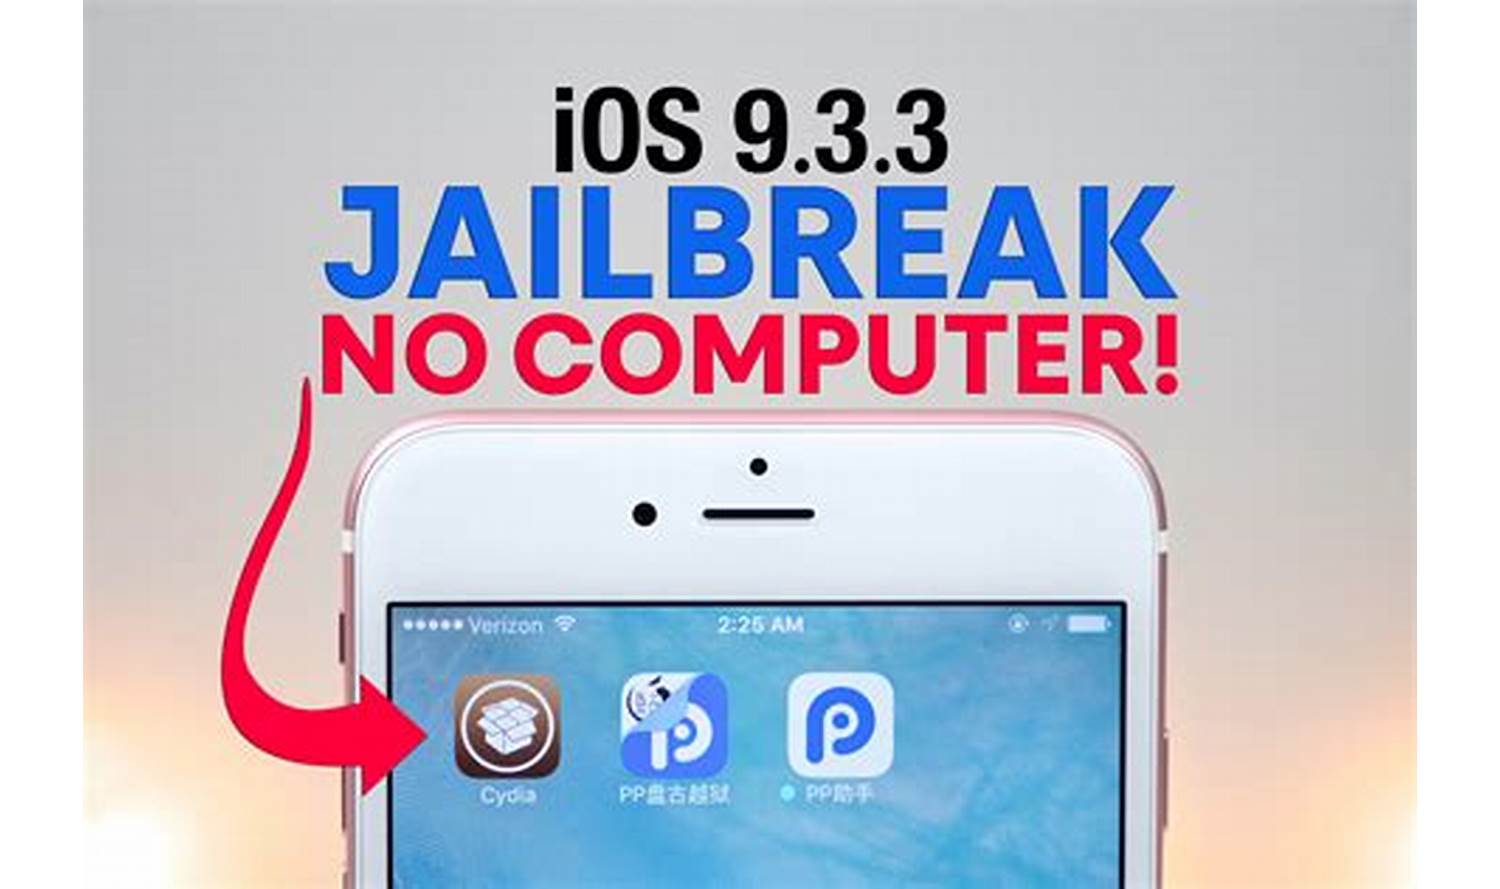 Enjoy jailbroken iOS